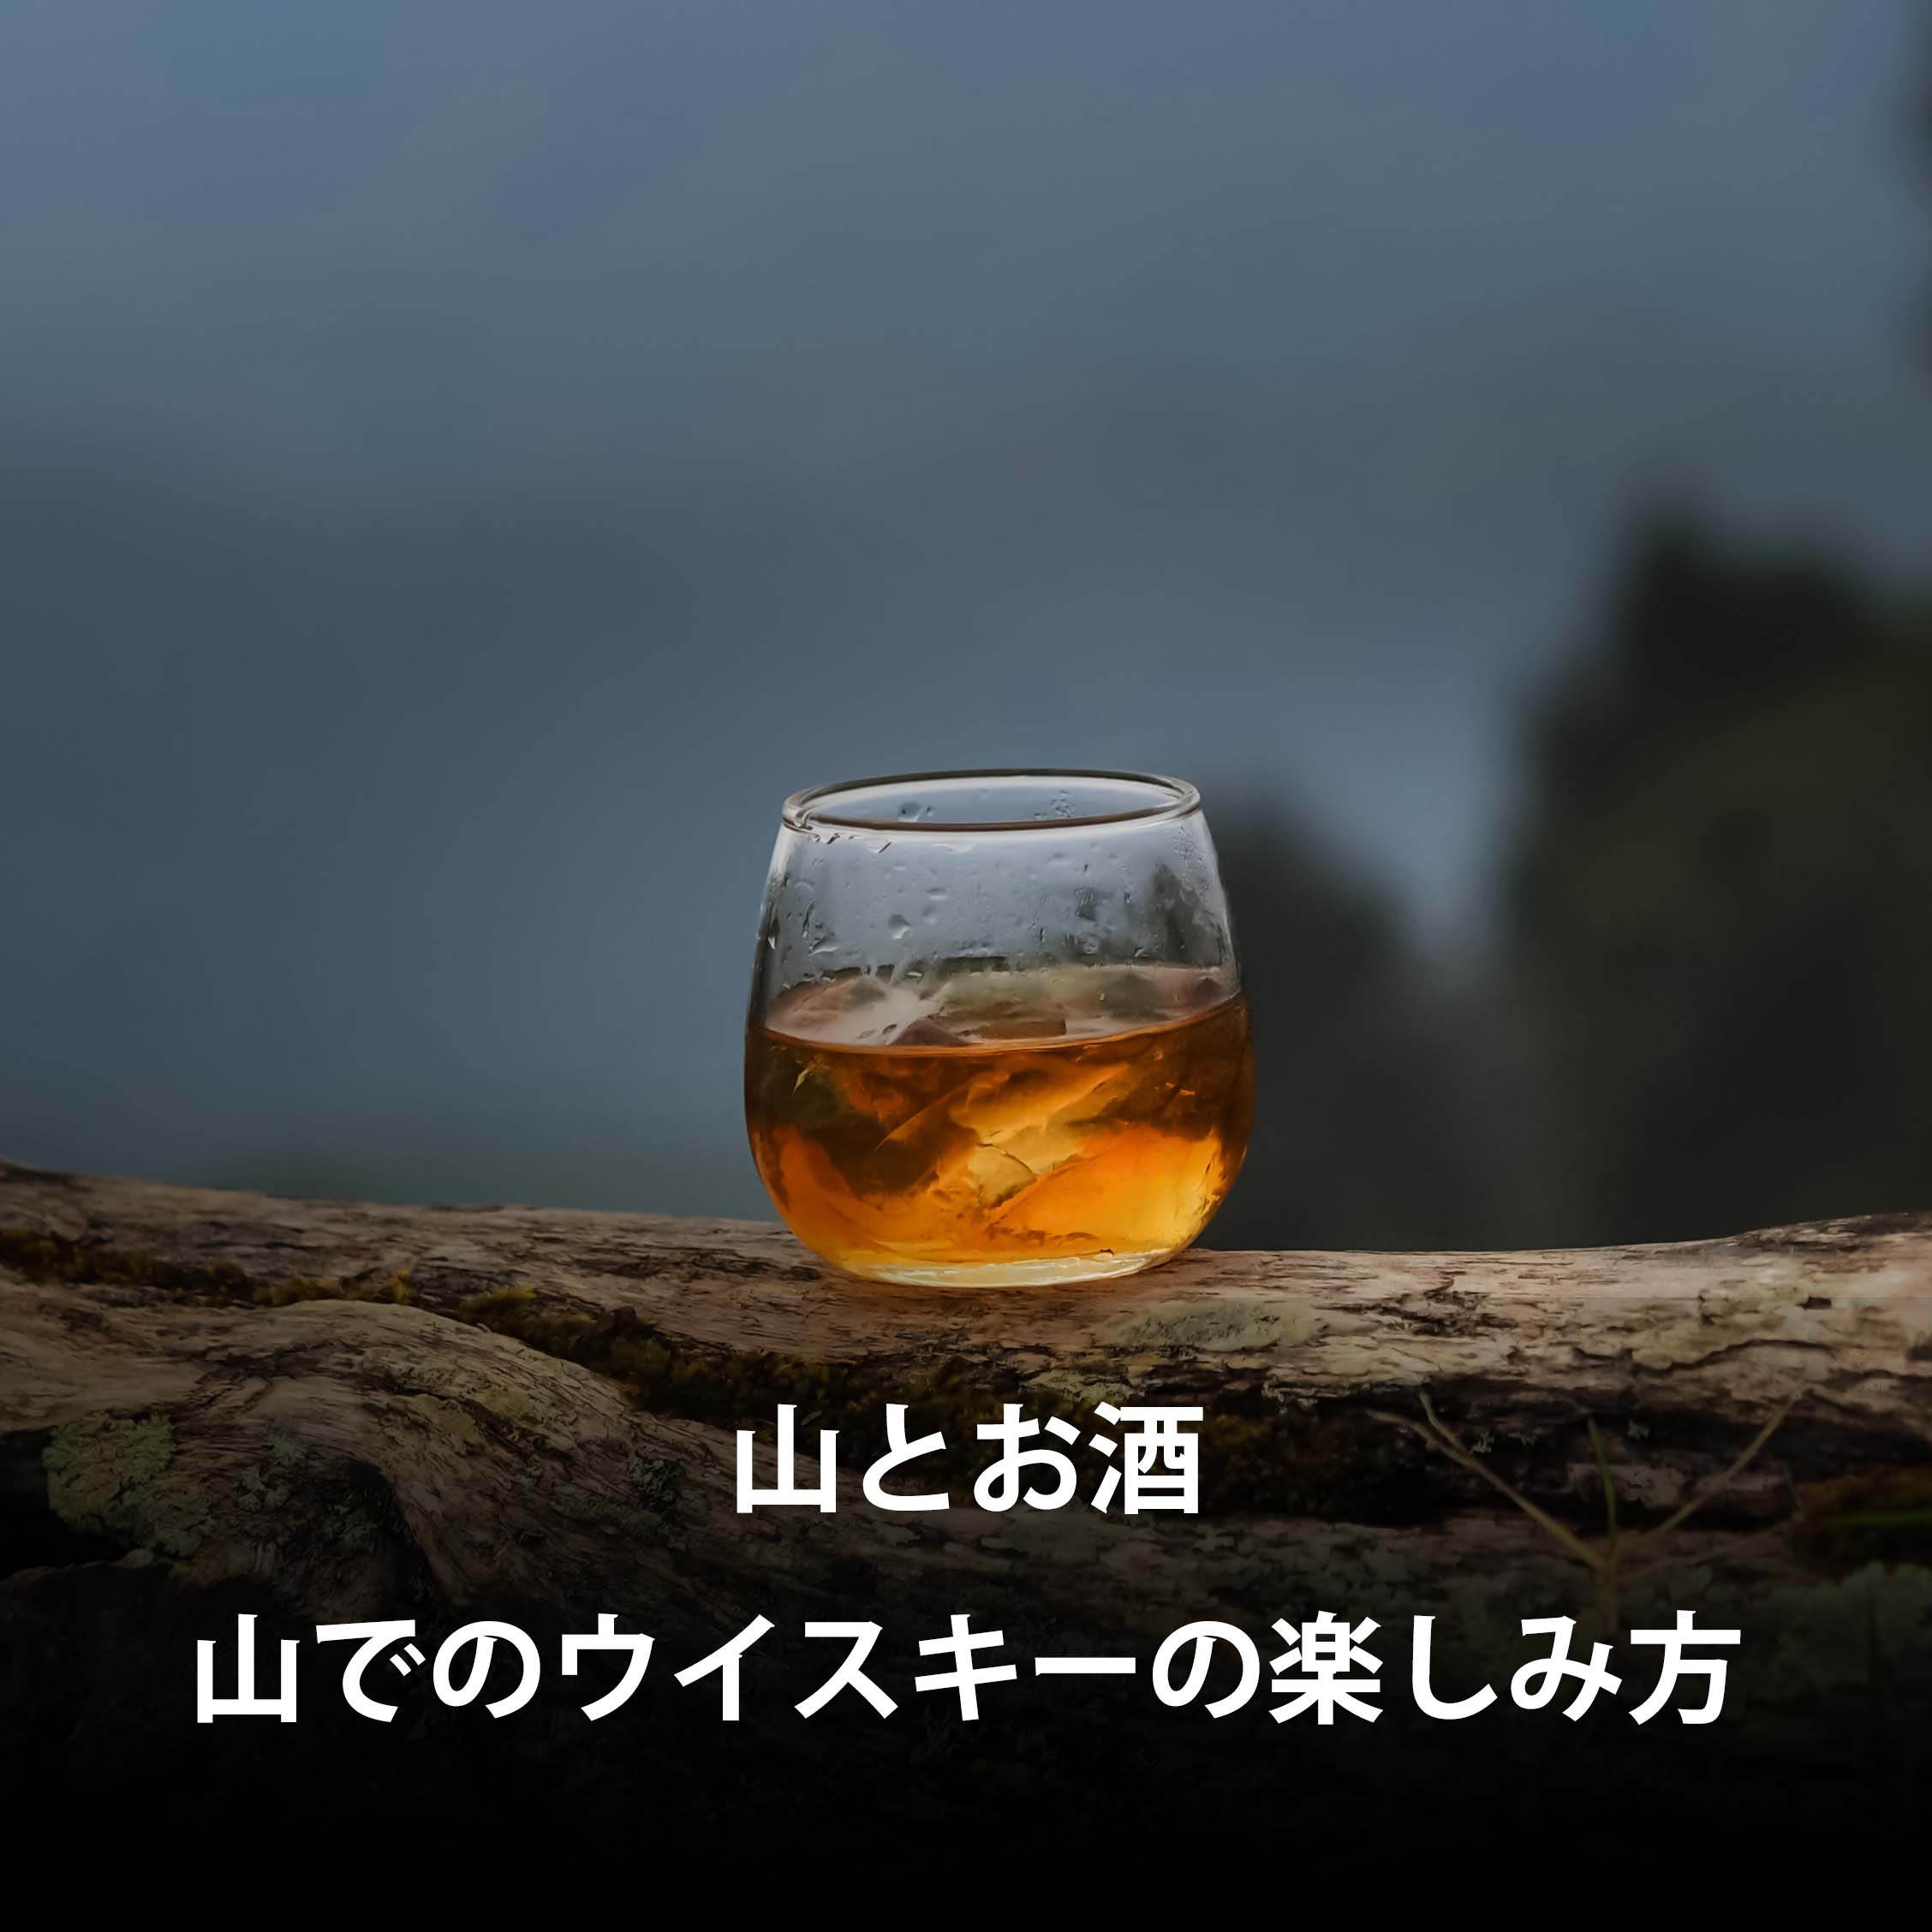 【山とお酒】オトコなら山でかっこよくウイスキーを飲もう